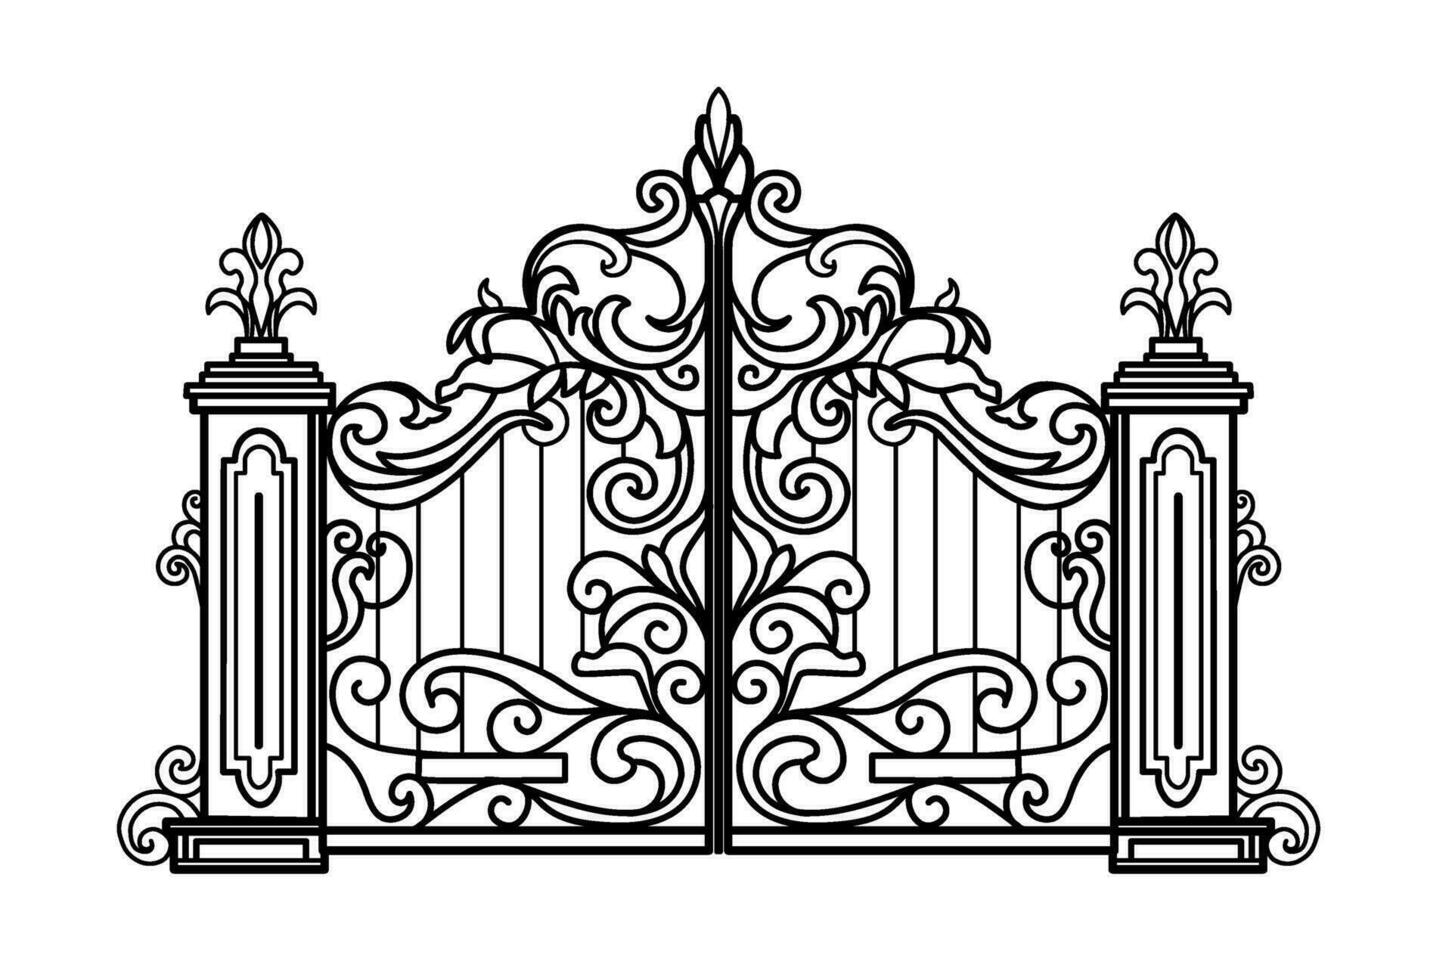 métal porte esquisser. vecteur illustration de décoratif forger de une deux portes jardin portail.